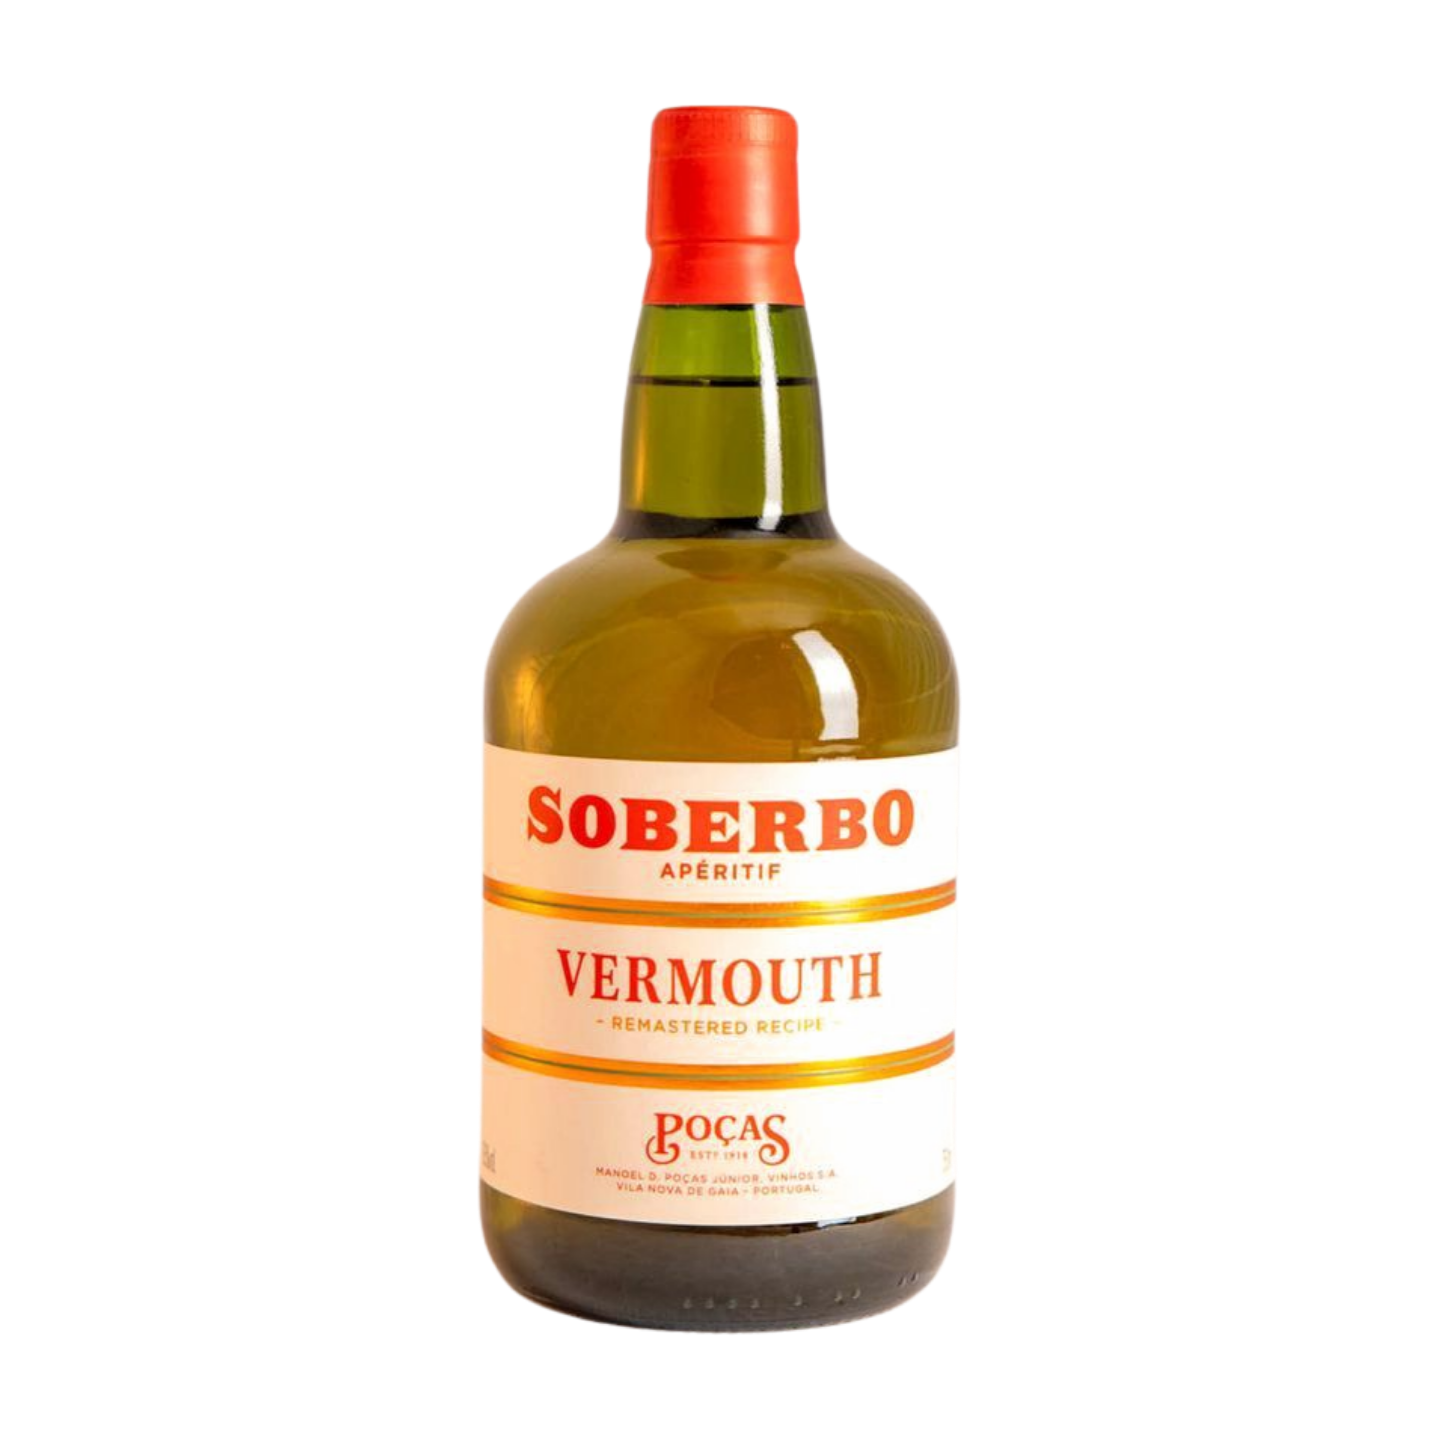 Poças - Vermouth - Soberbo